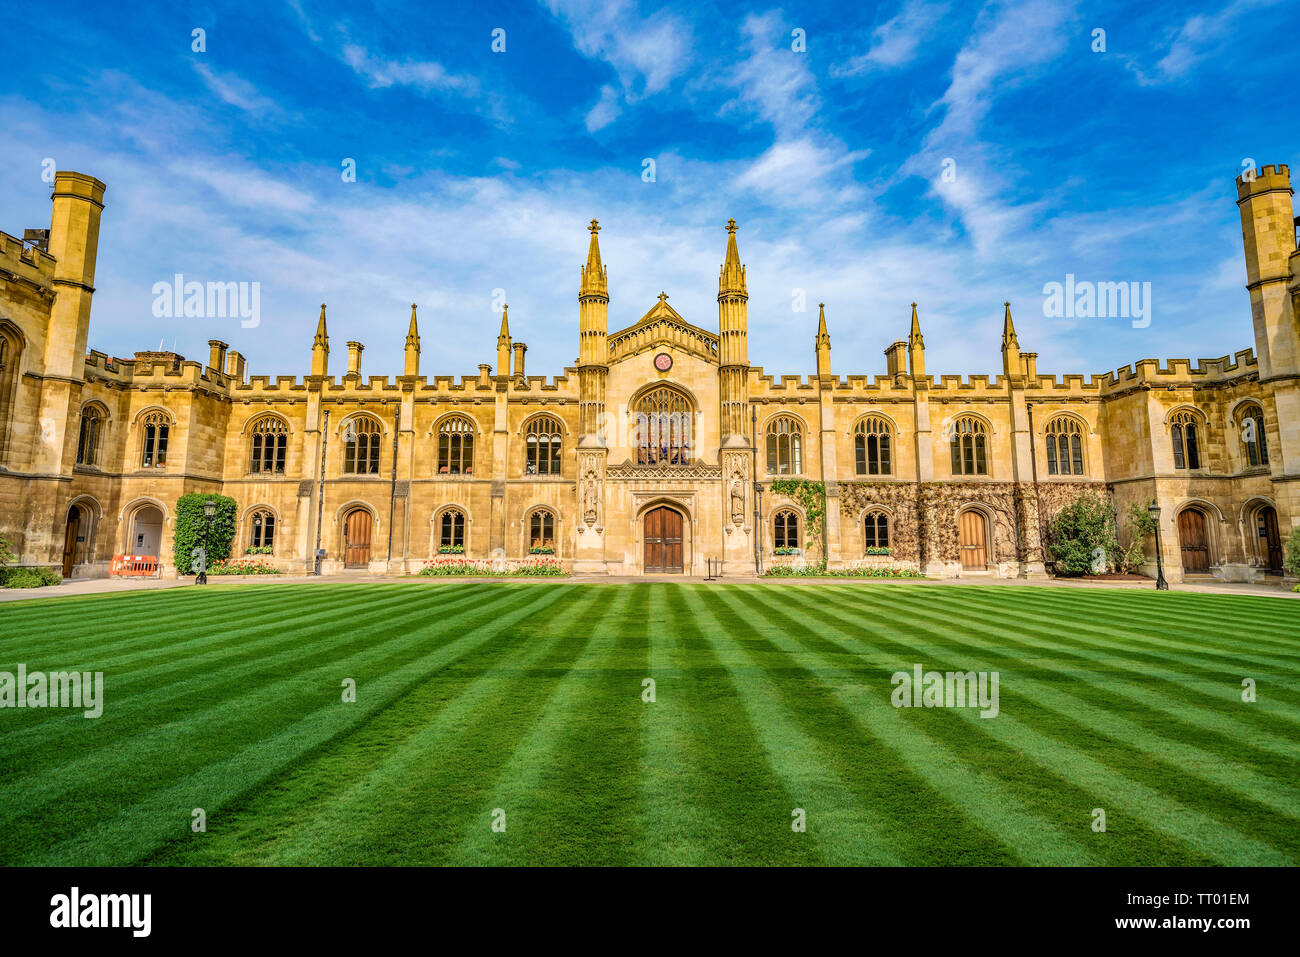 CAMBRIDGE, Großbritannien - 18 April: Dies ist die traditionelle Architektur des Corpus Christi College, ein konstituierendes College der Cambridge University o Stockfoto